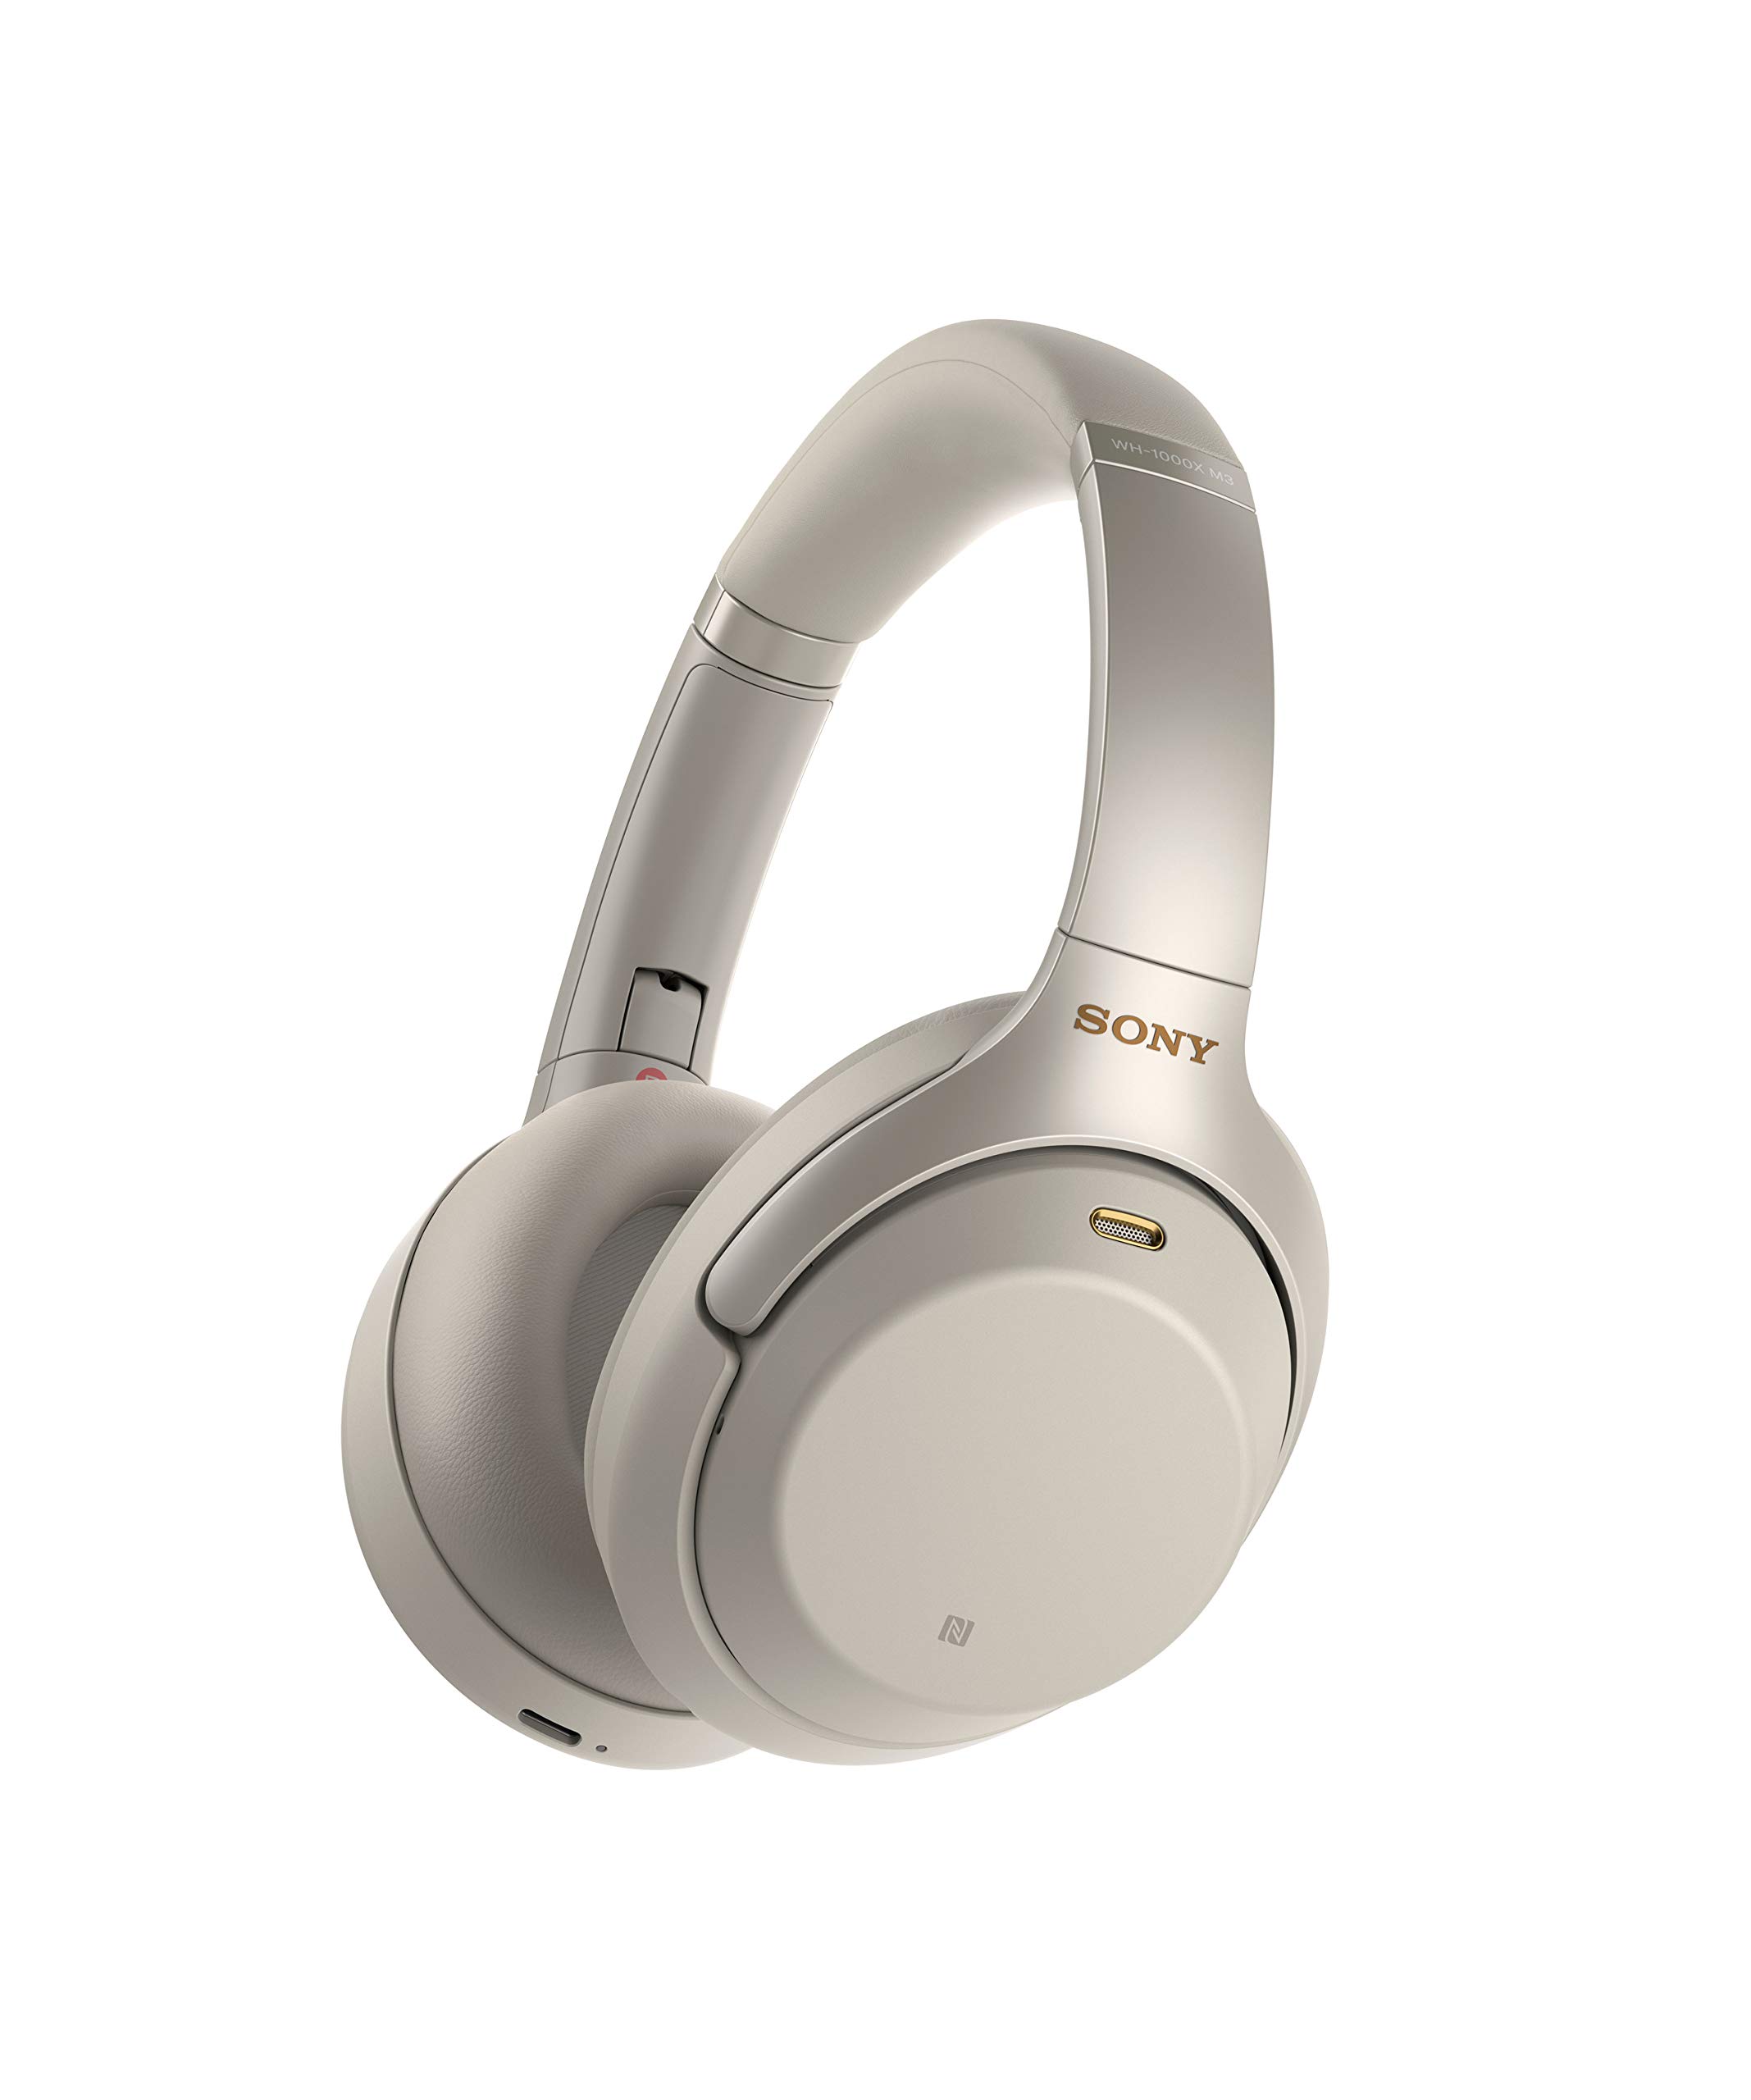 Sony Bezprzewodowy stereofoniczny zestaw słuchawkowy z redukcją szumów WH-1000XM3 (wersja międzynarodowa/gwarancja sprzedawcy) (srebrny)